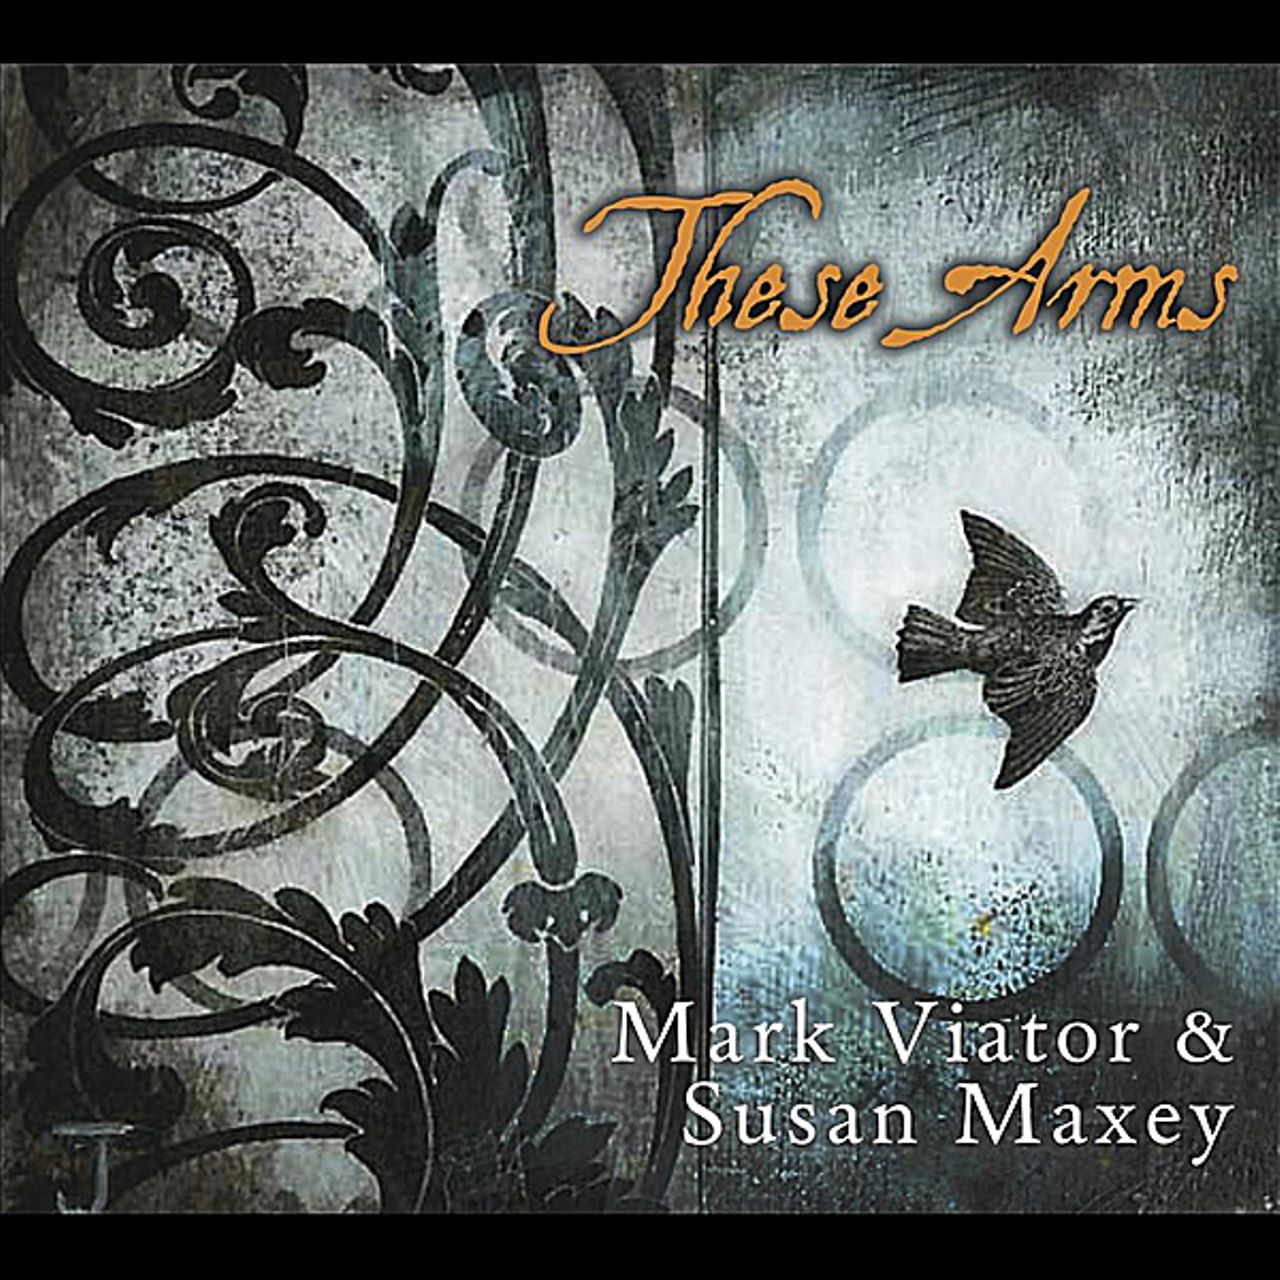 Mark Viator & Susan Maxey - These Arms cover album